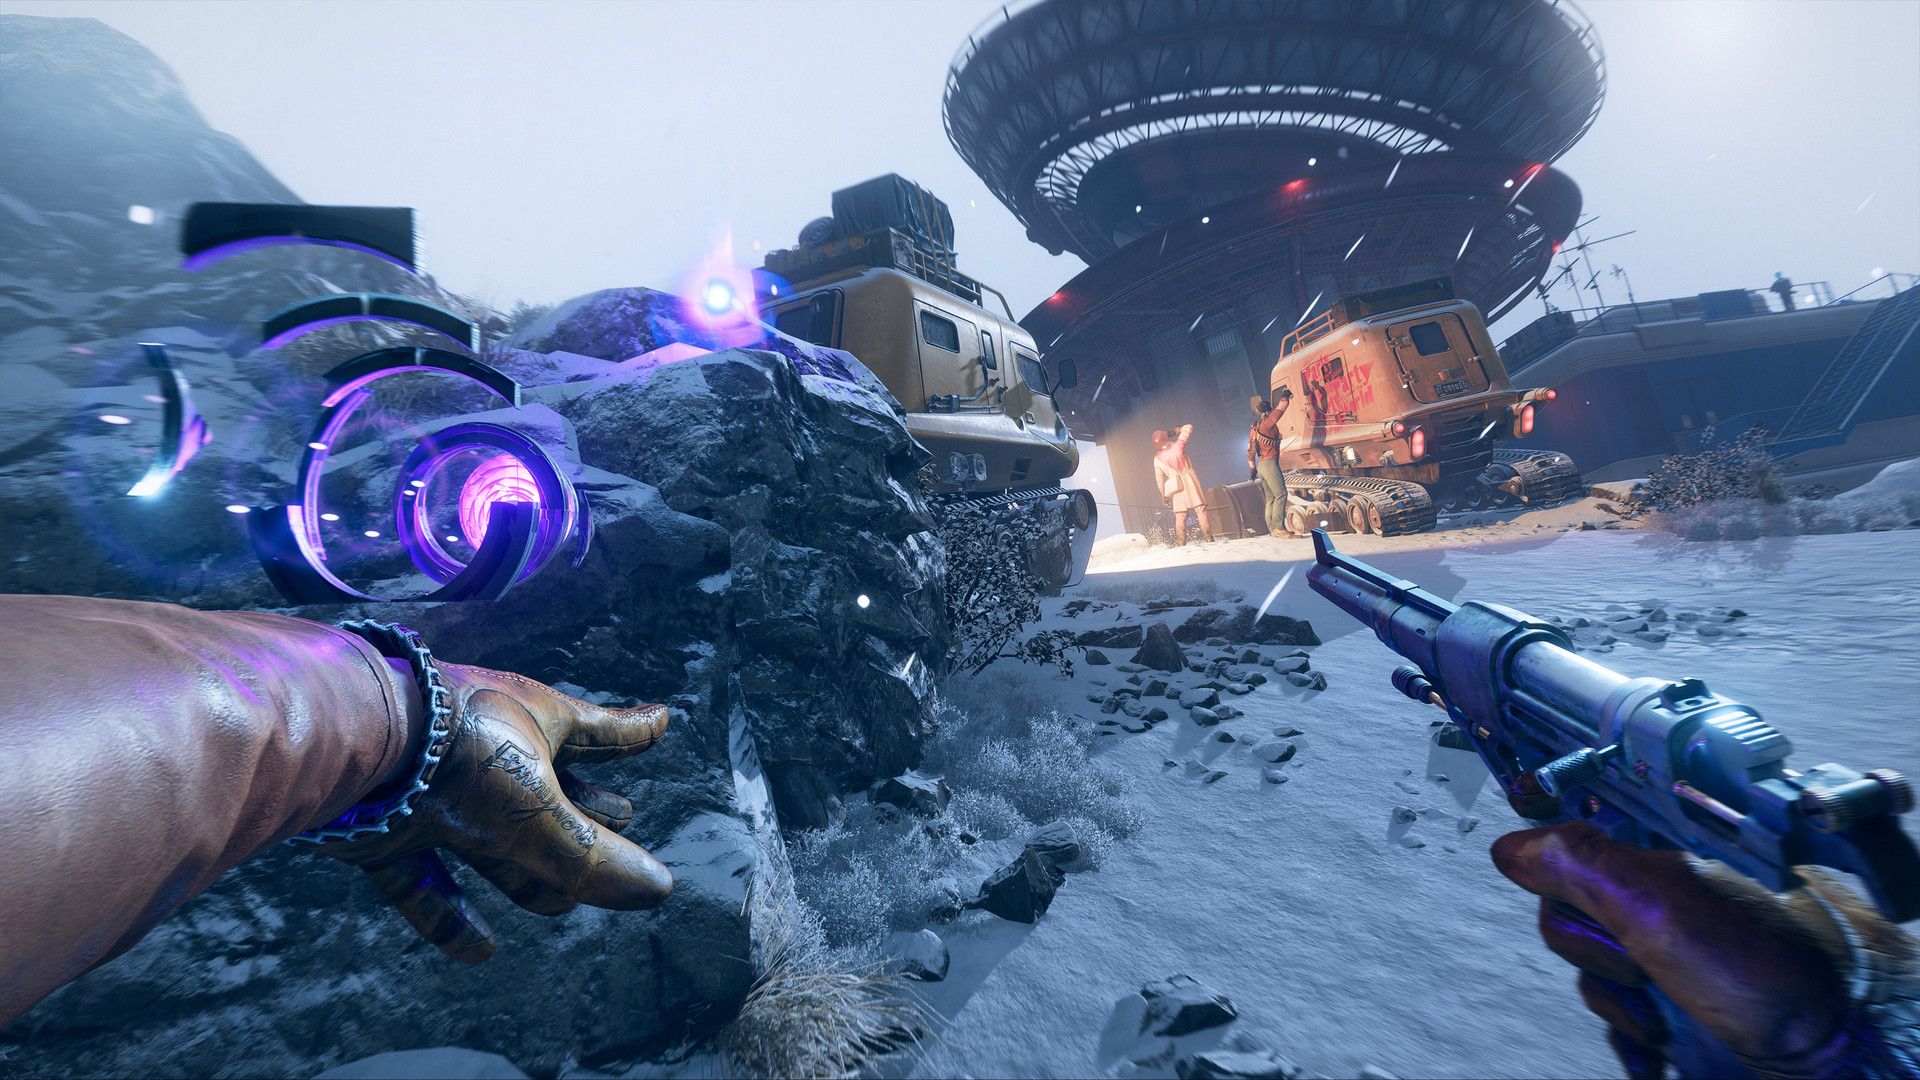 Prime Gaming adds Deathloop, Asteroids in December